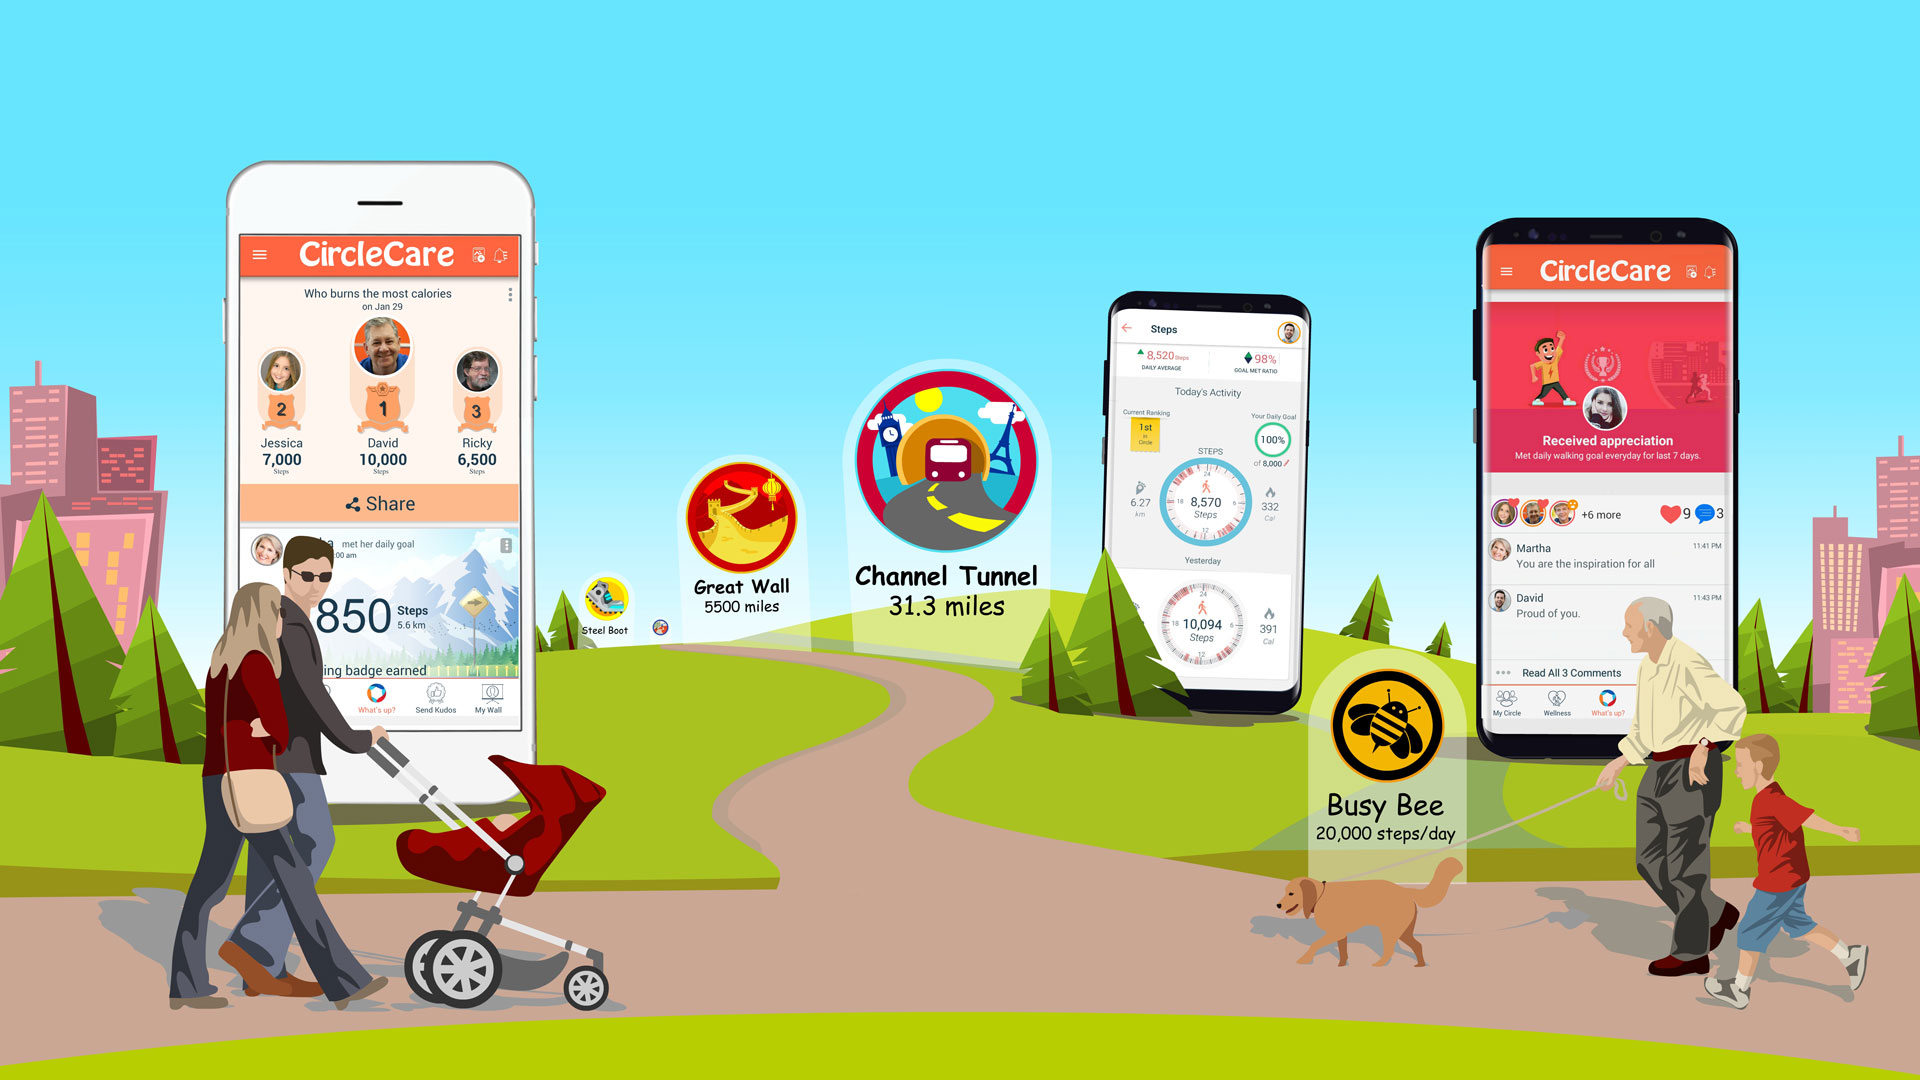 CircleCare-walking-motivation-friends-family-wellness-app